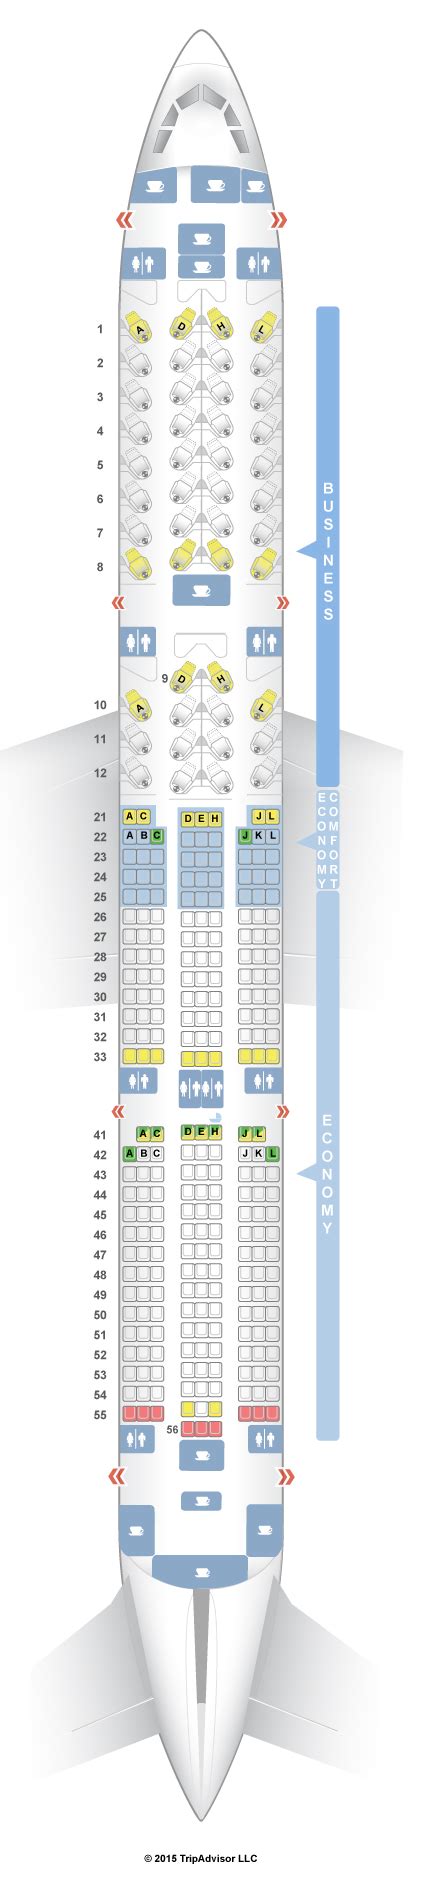 Seatguru Seat Map Finnair Airbus A350 900 350